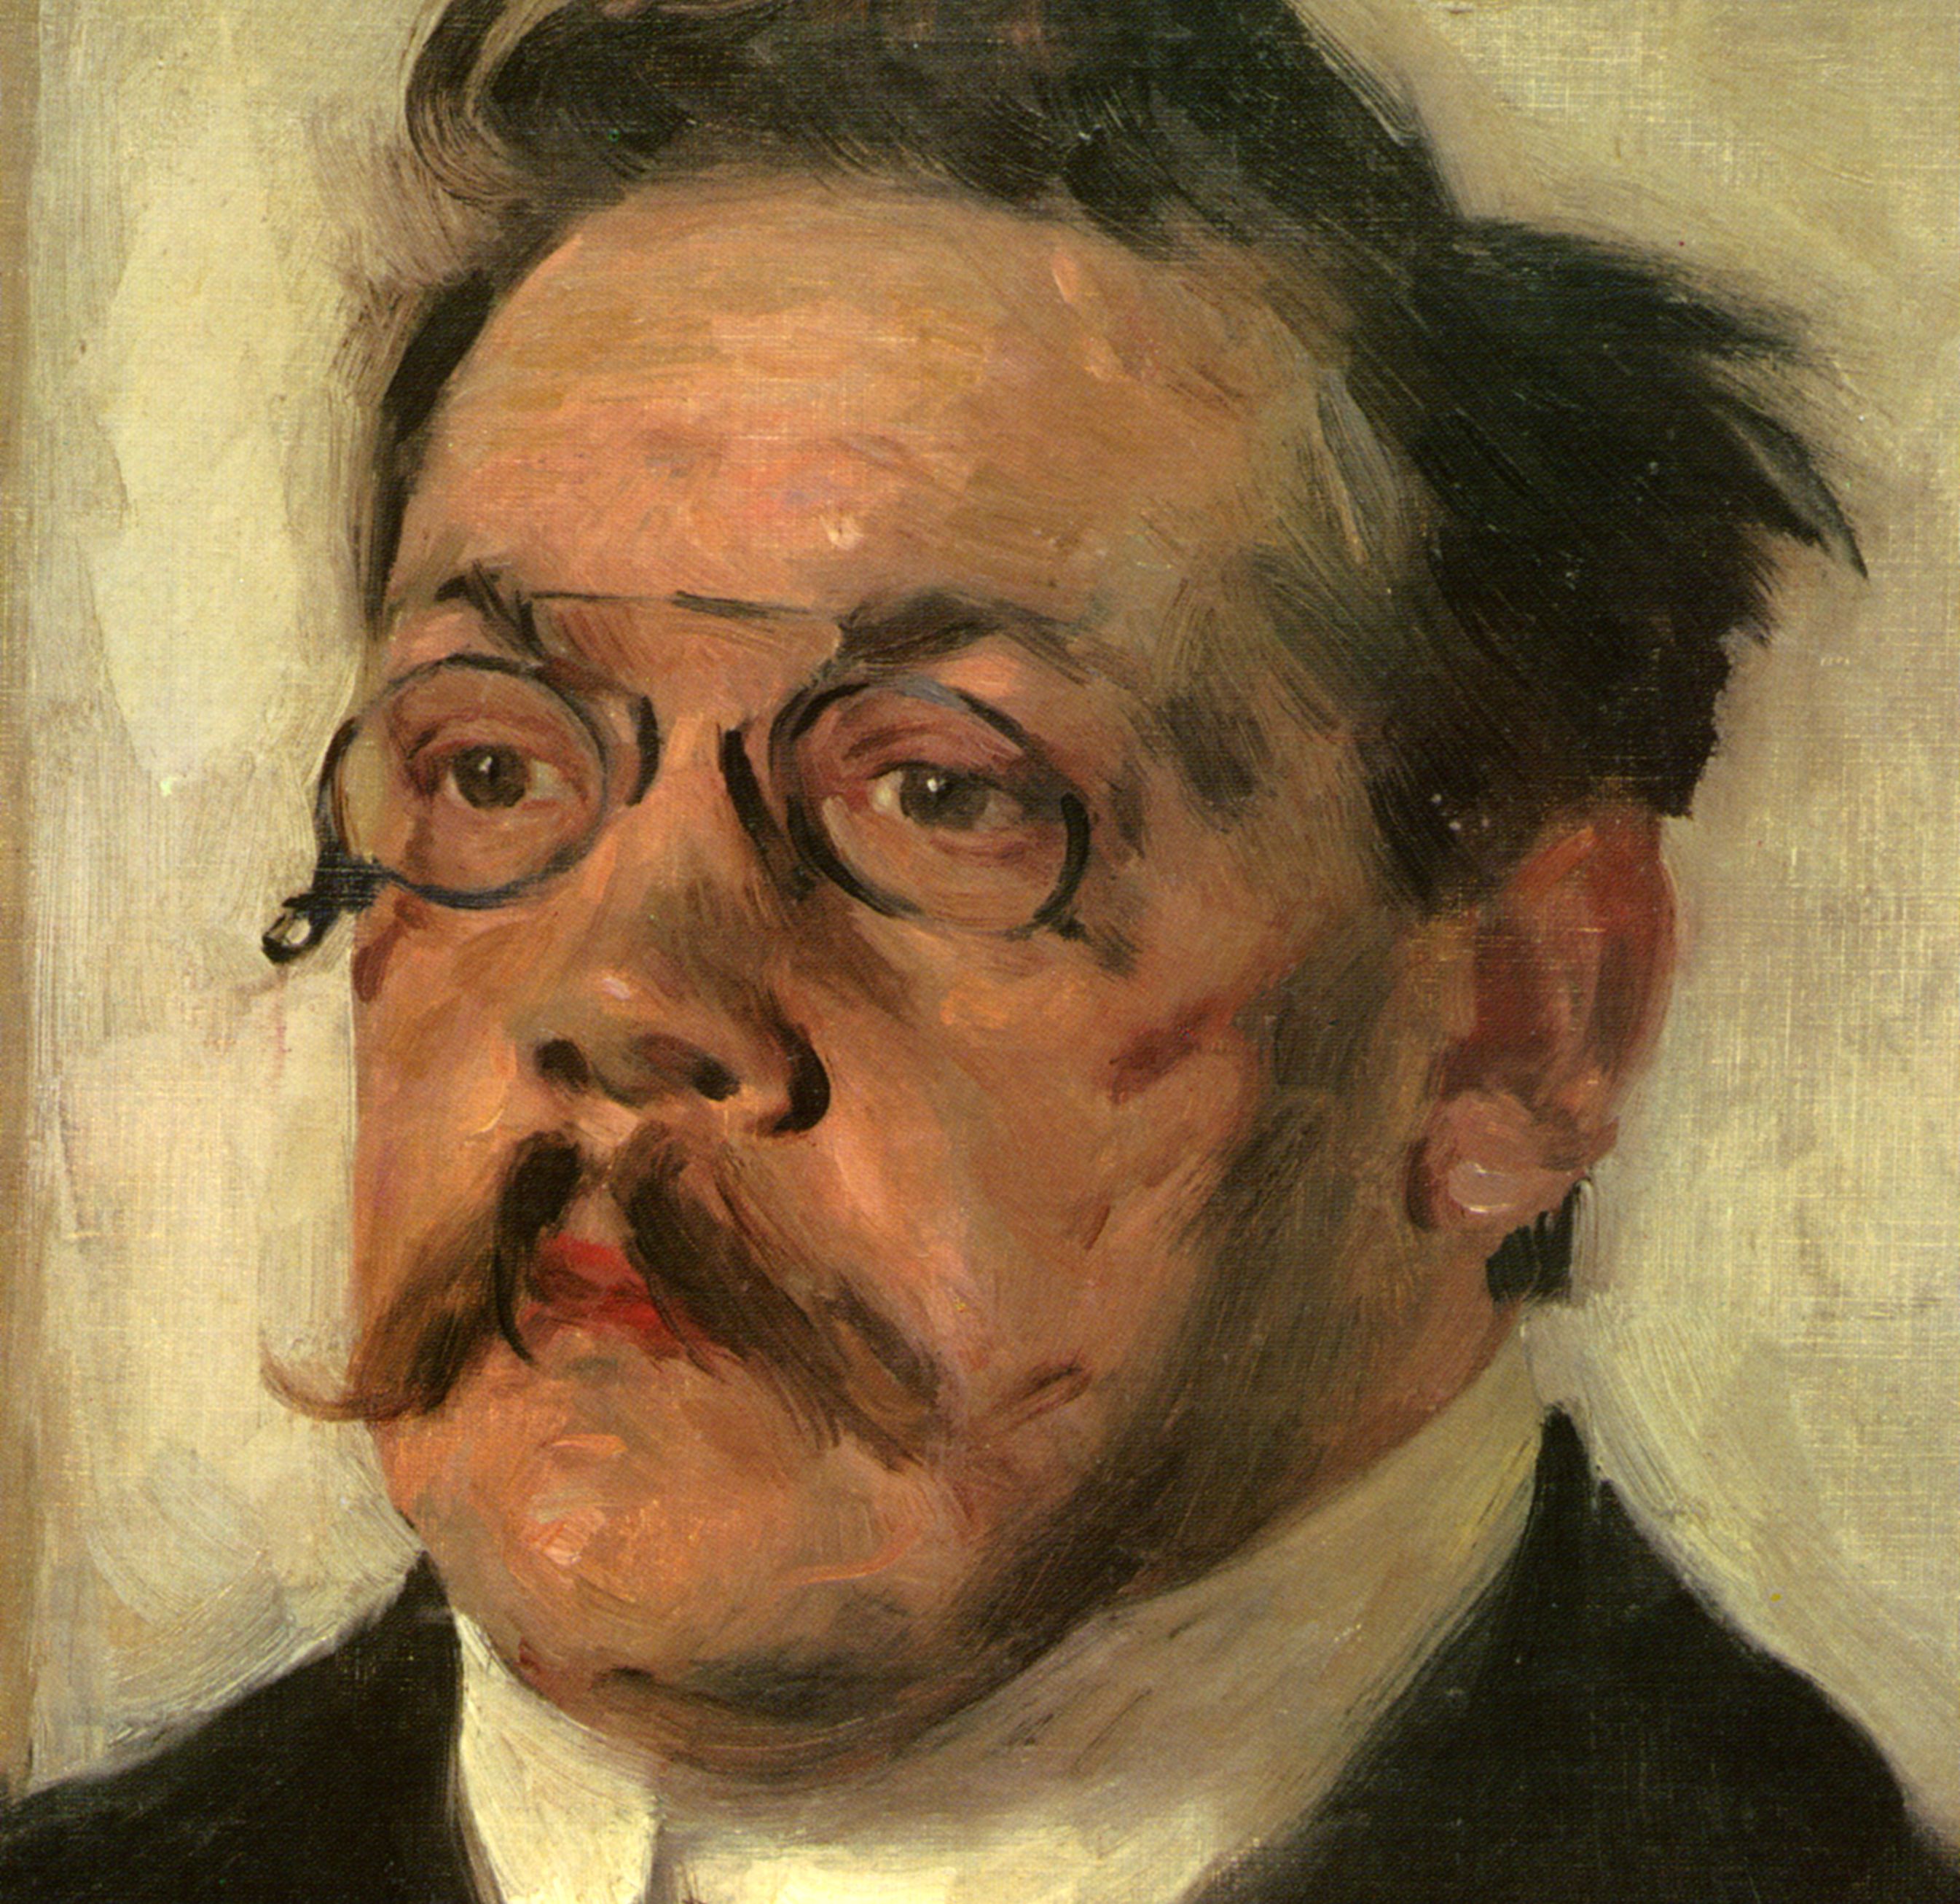 Porträt von Ludwig Thoma von Karl Klimsch, vermutlich 1909